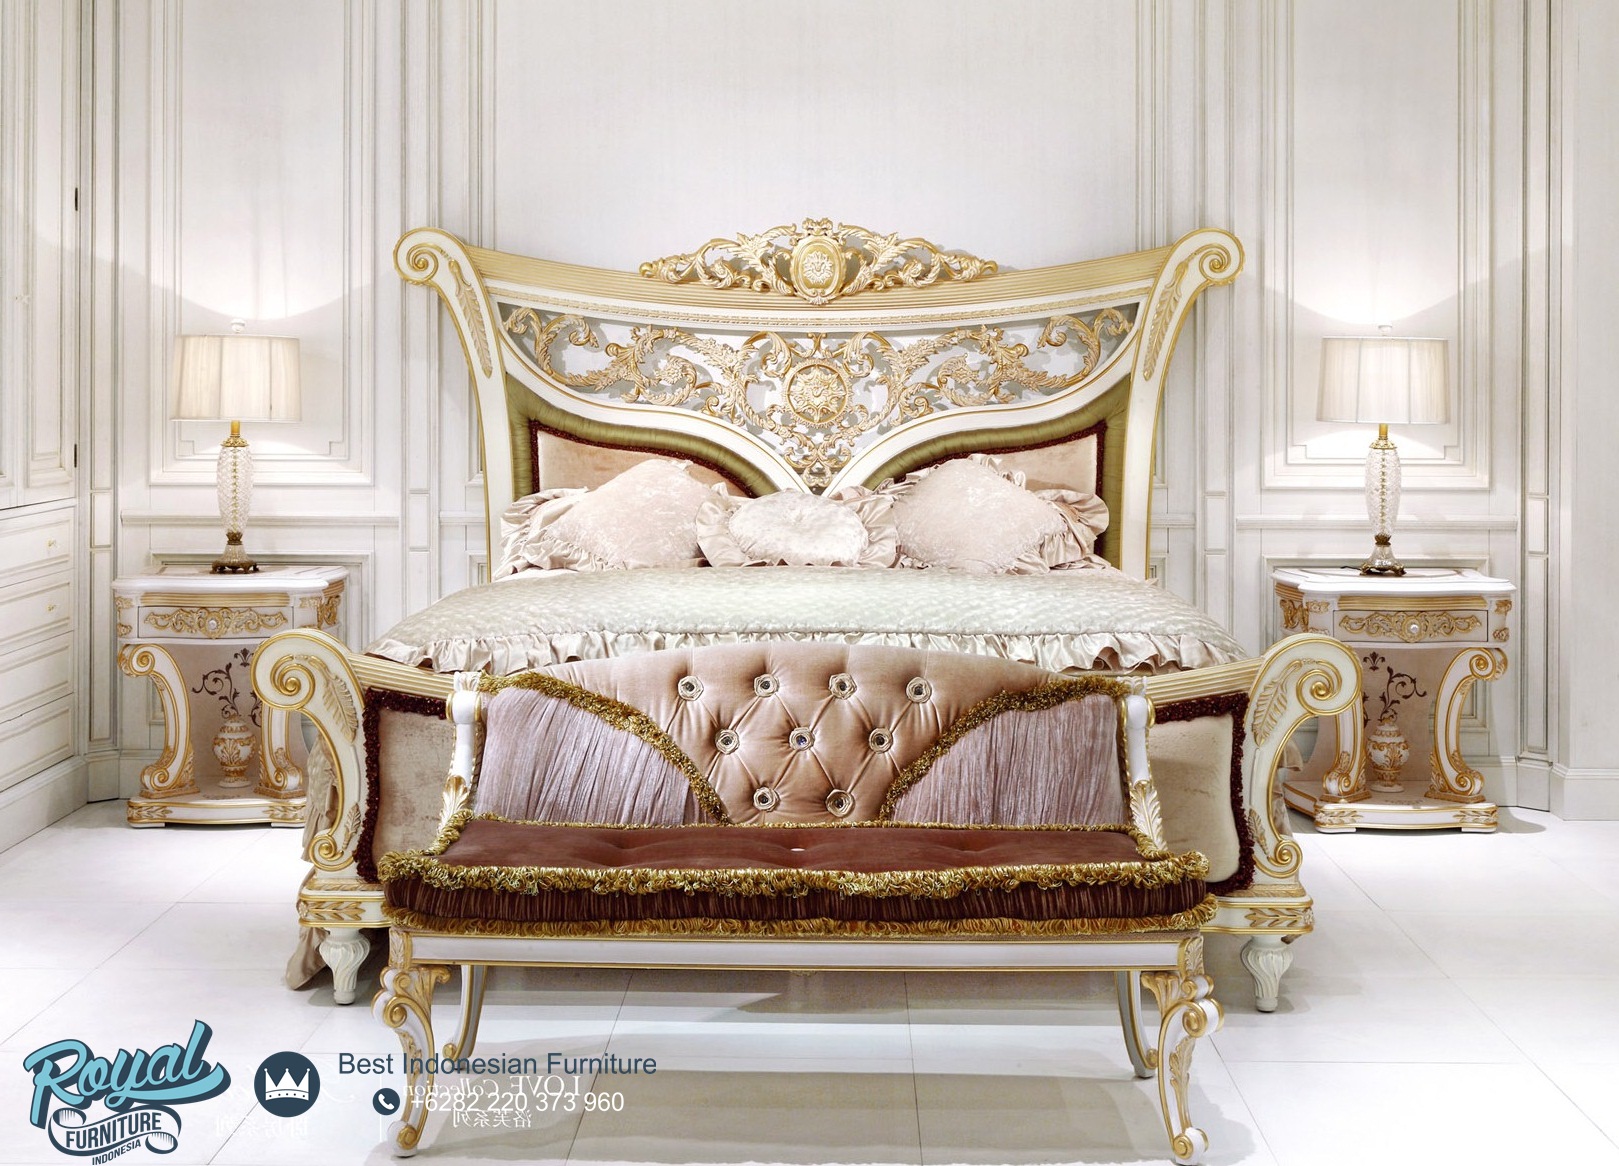 Set Tempat Tidur Ukir Mewah Klasik Jepara Raflesia Terbaru Royal Furniture